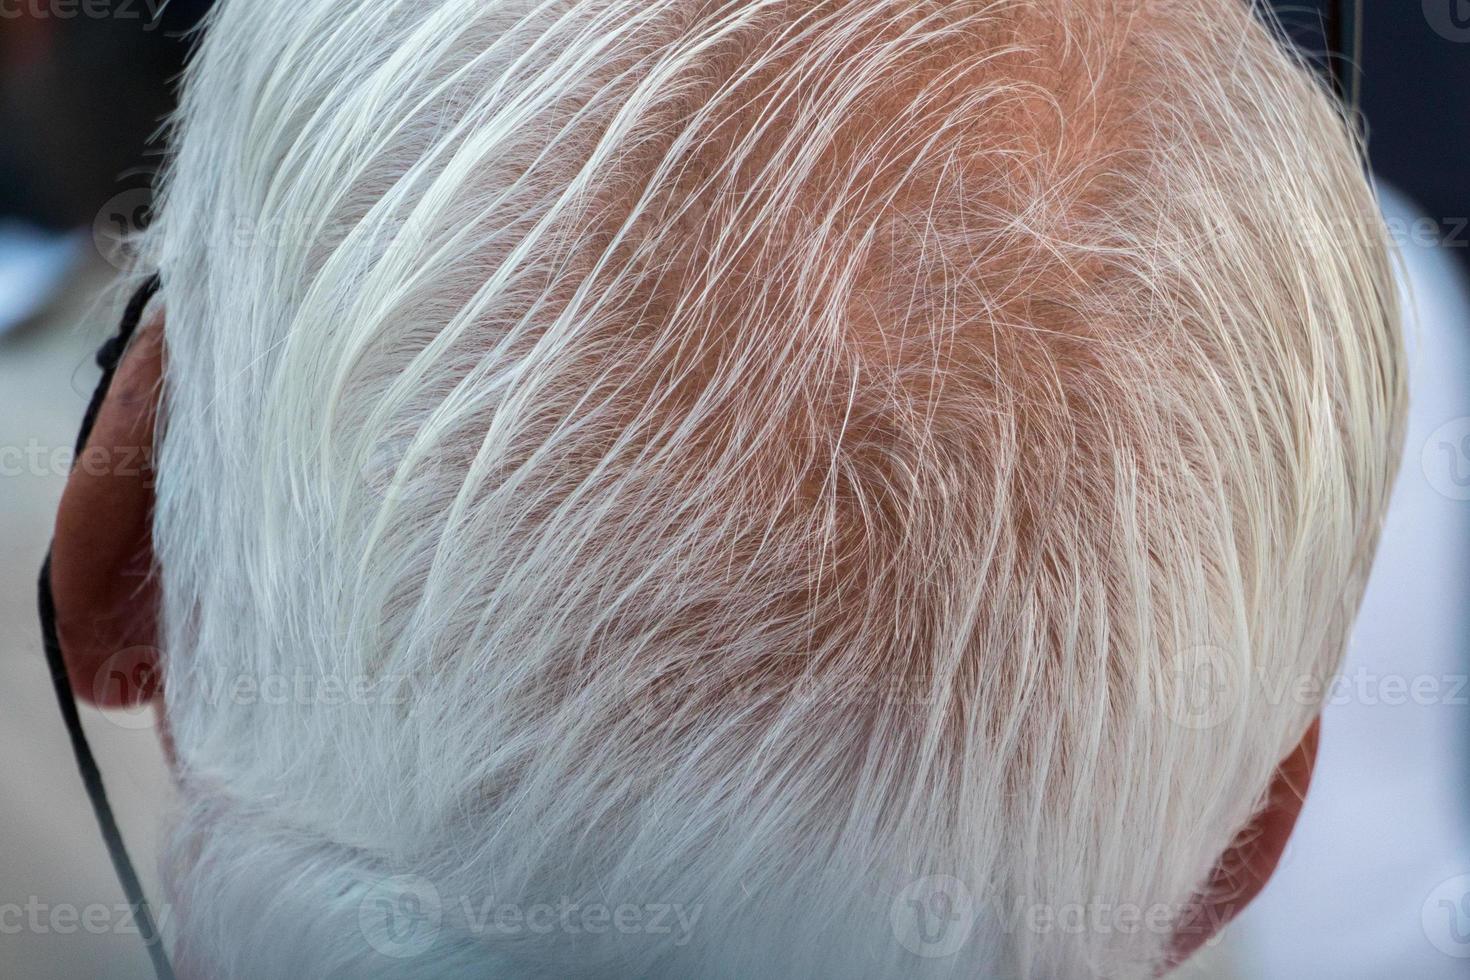 detalhe dos cabelos brancos do homem mais velho foto